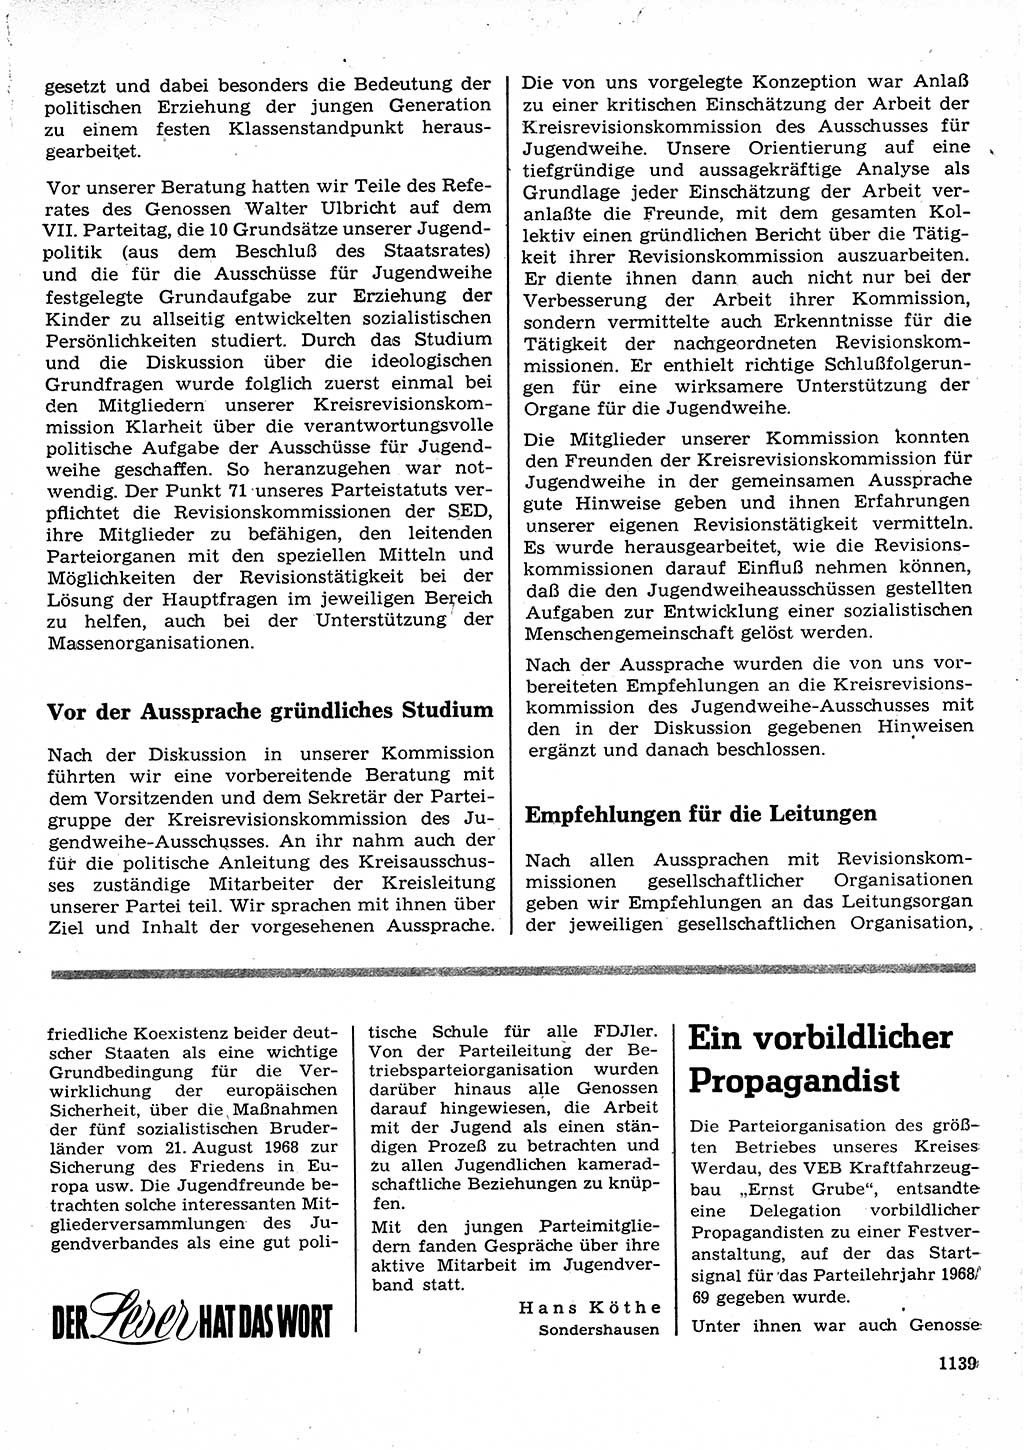 Neuer Weg (NW), Organ des Zentralkomitees (ZK) der SED (Sozialistische Einheitspartei Deutschlands) für Fragen des Parteilebens, 23. Jahrgang [Deutsche Demokratische Republik (DDR)] 1968, Seite 1123 (NW ZK SED DDR 1968, S. 1123)